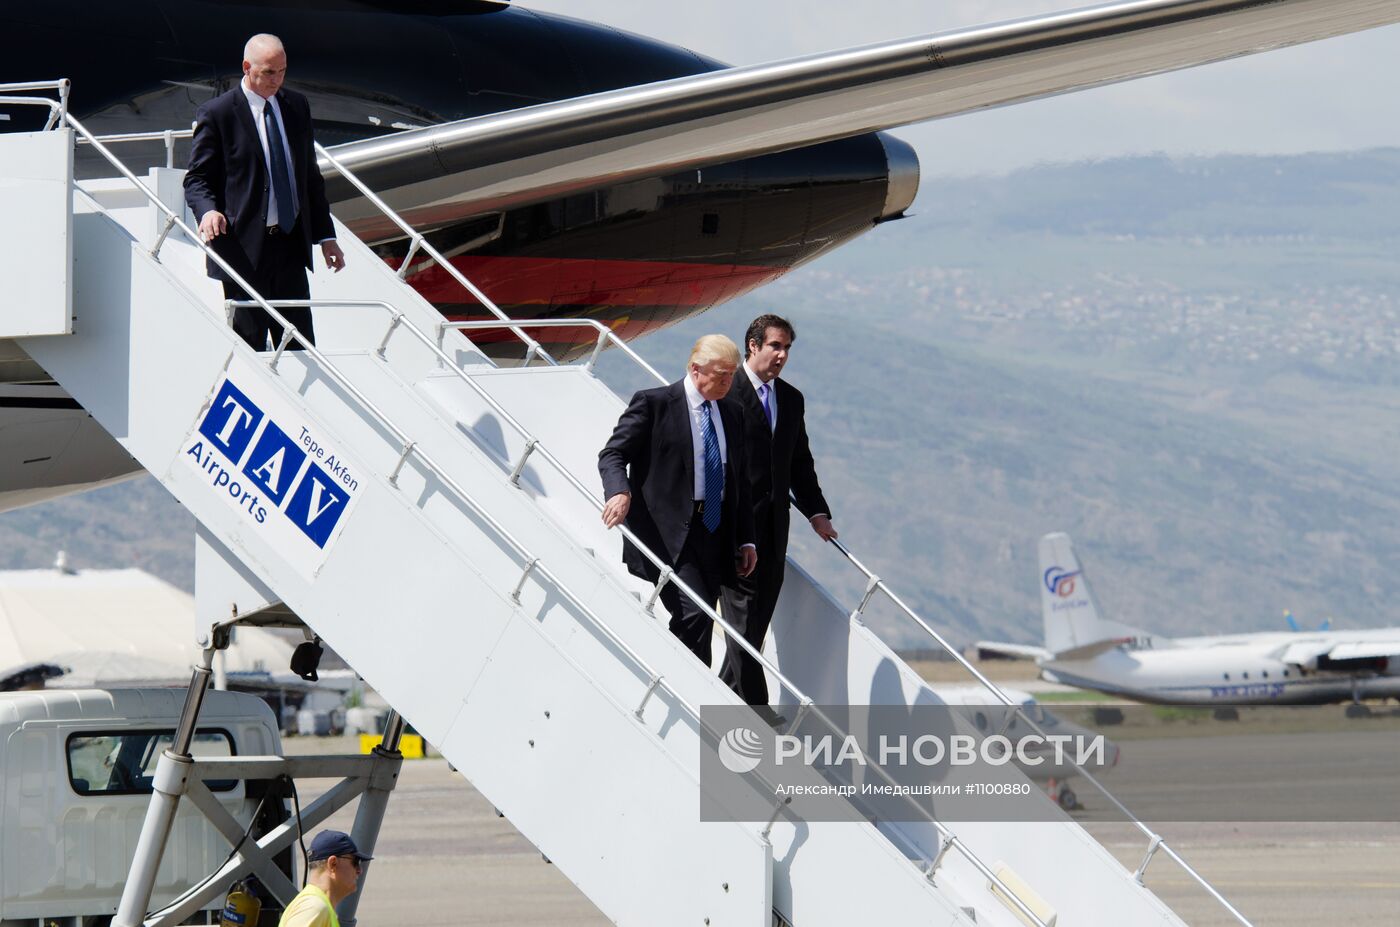 Прибытие американского миллиардера Дональда Трампа в Тбилиси